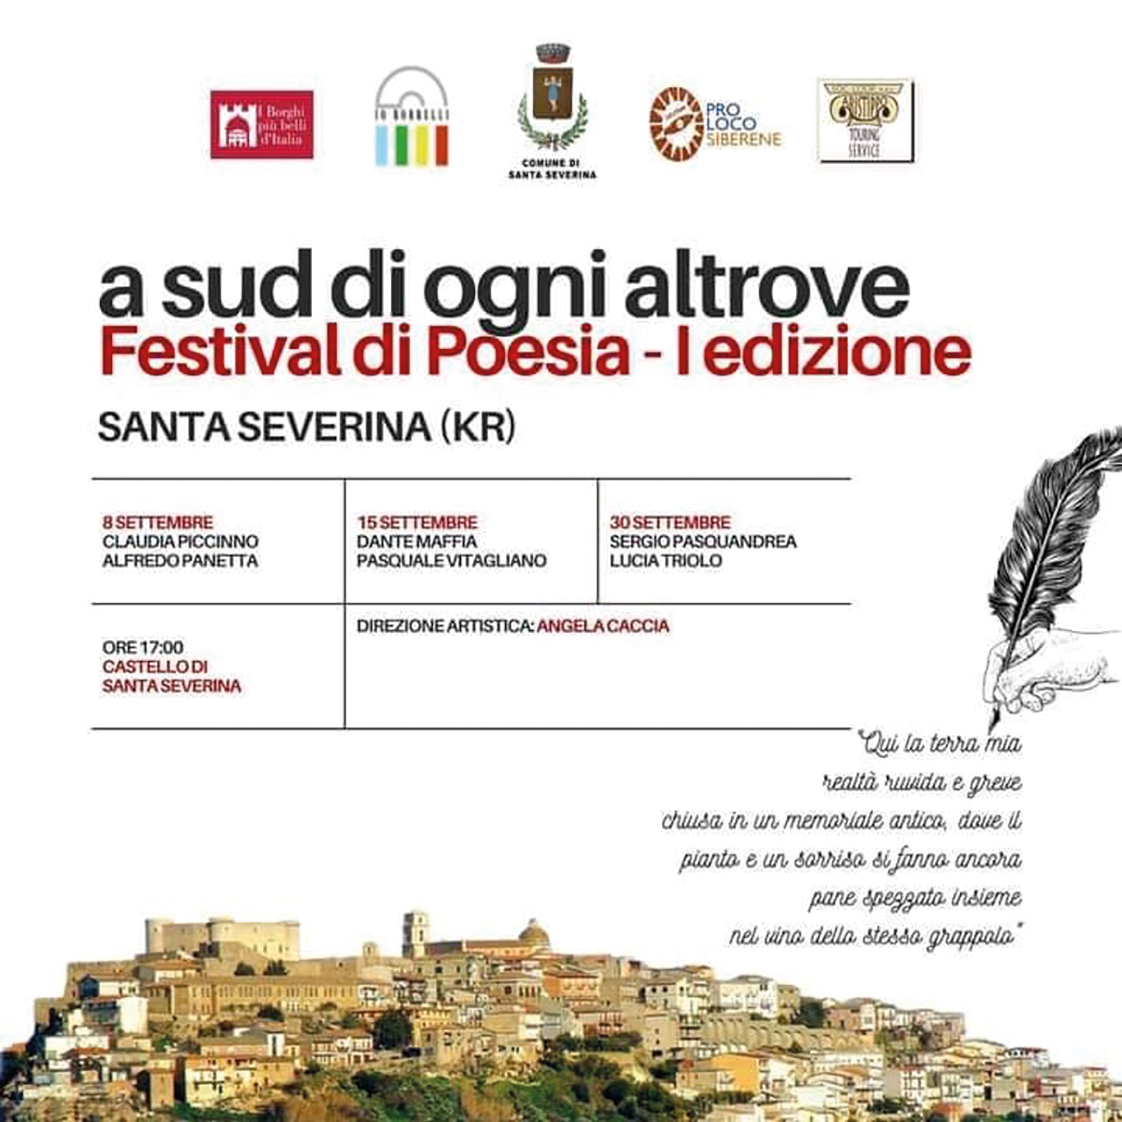 Imminente in Calabria il festival di poesia A sud di ogni altrove